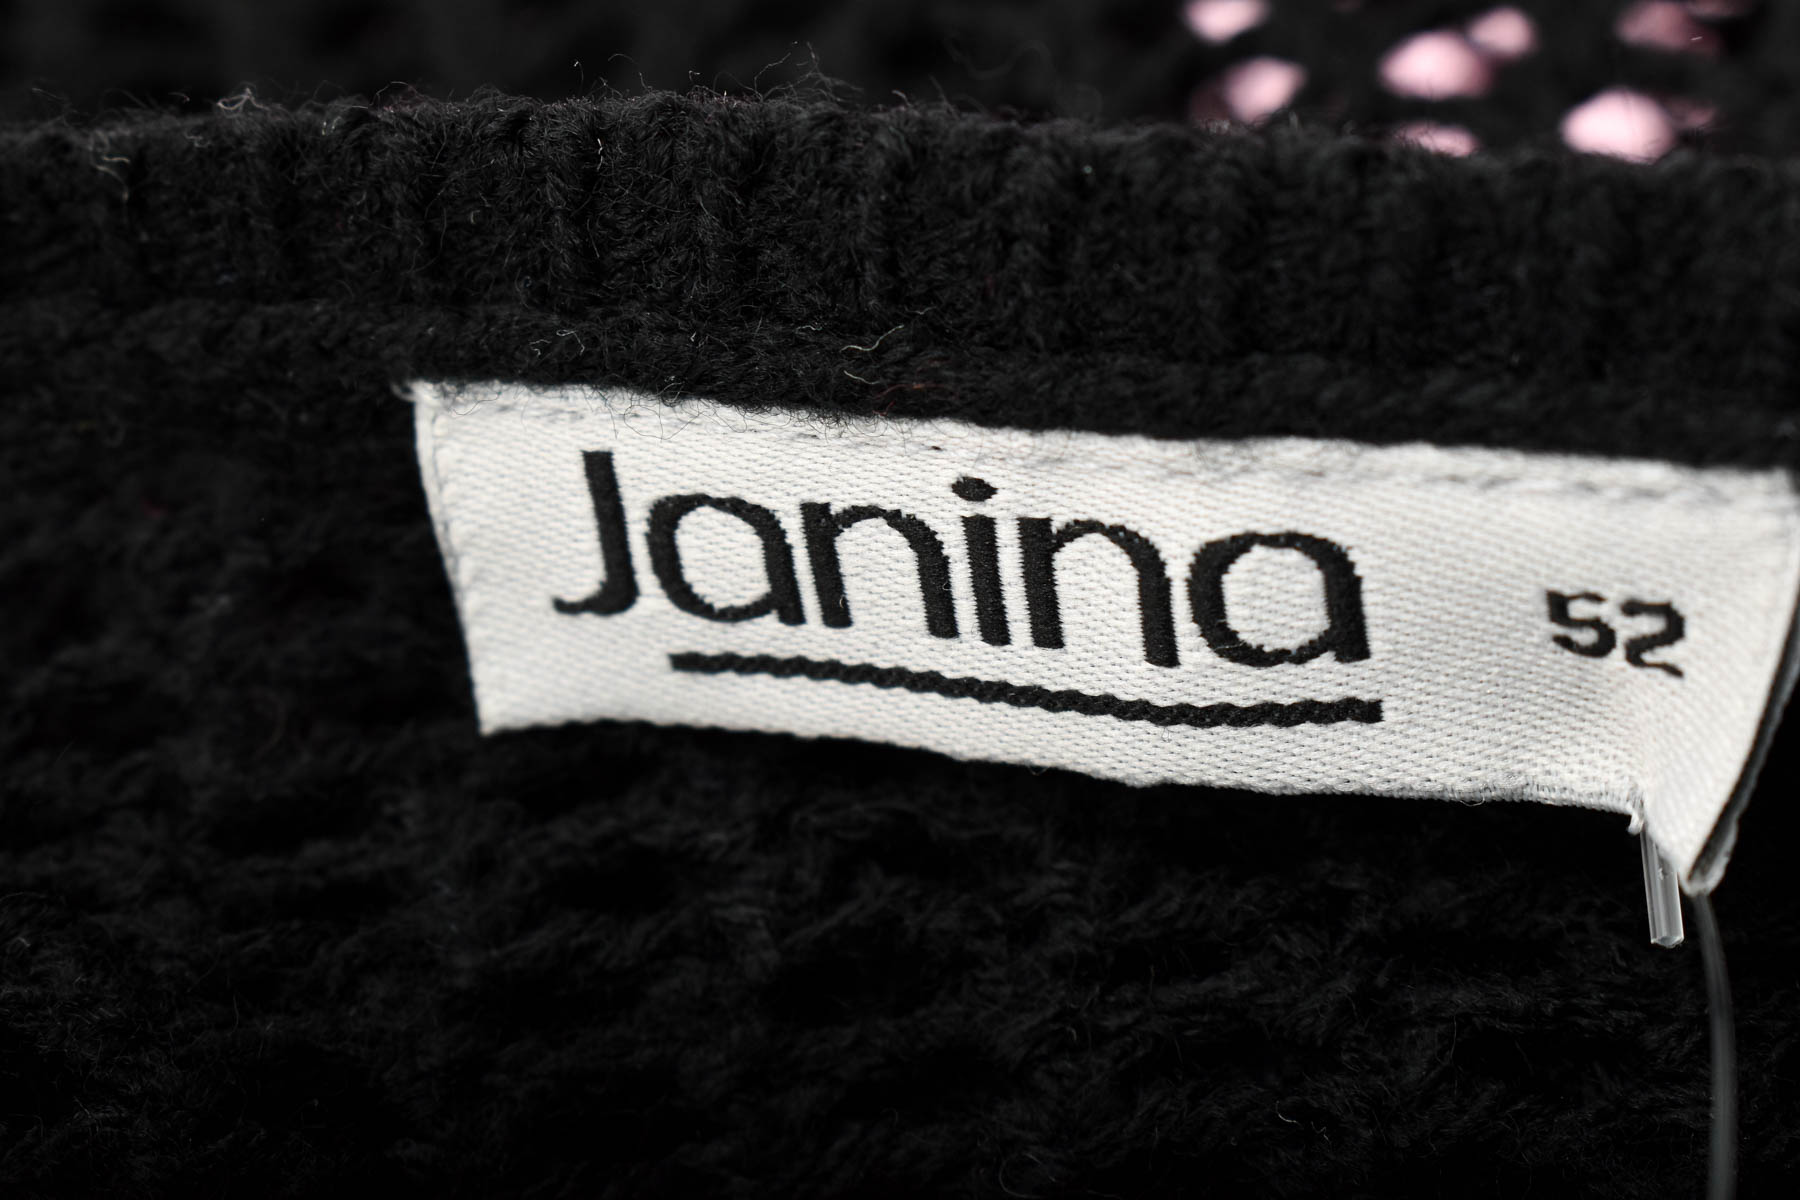 Γυναικείο πουλόβερ - Janina - 2